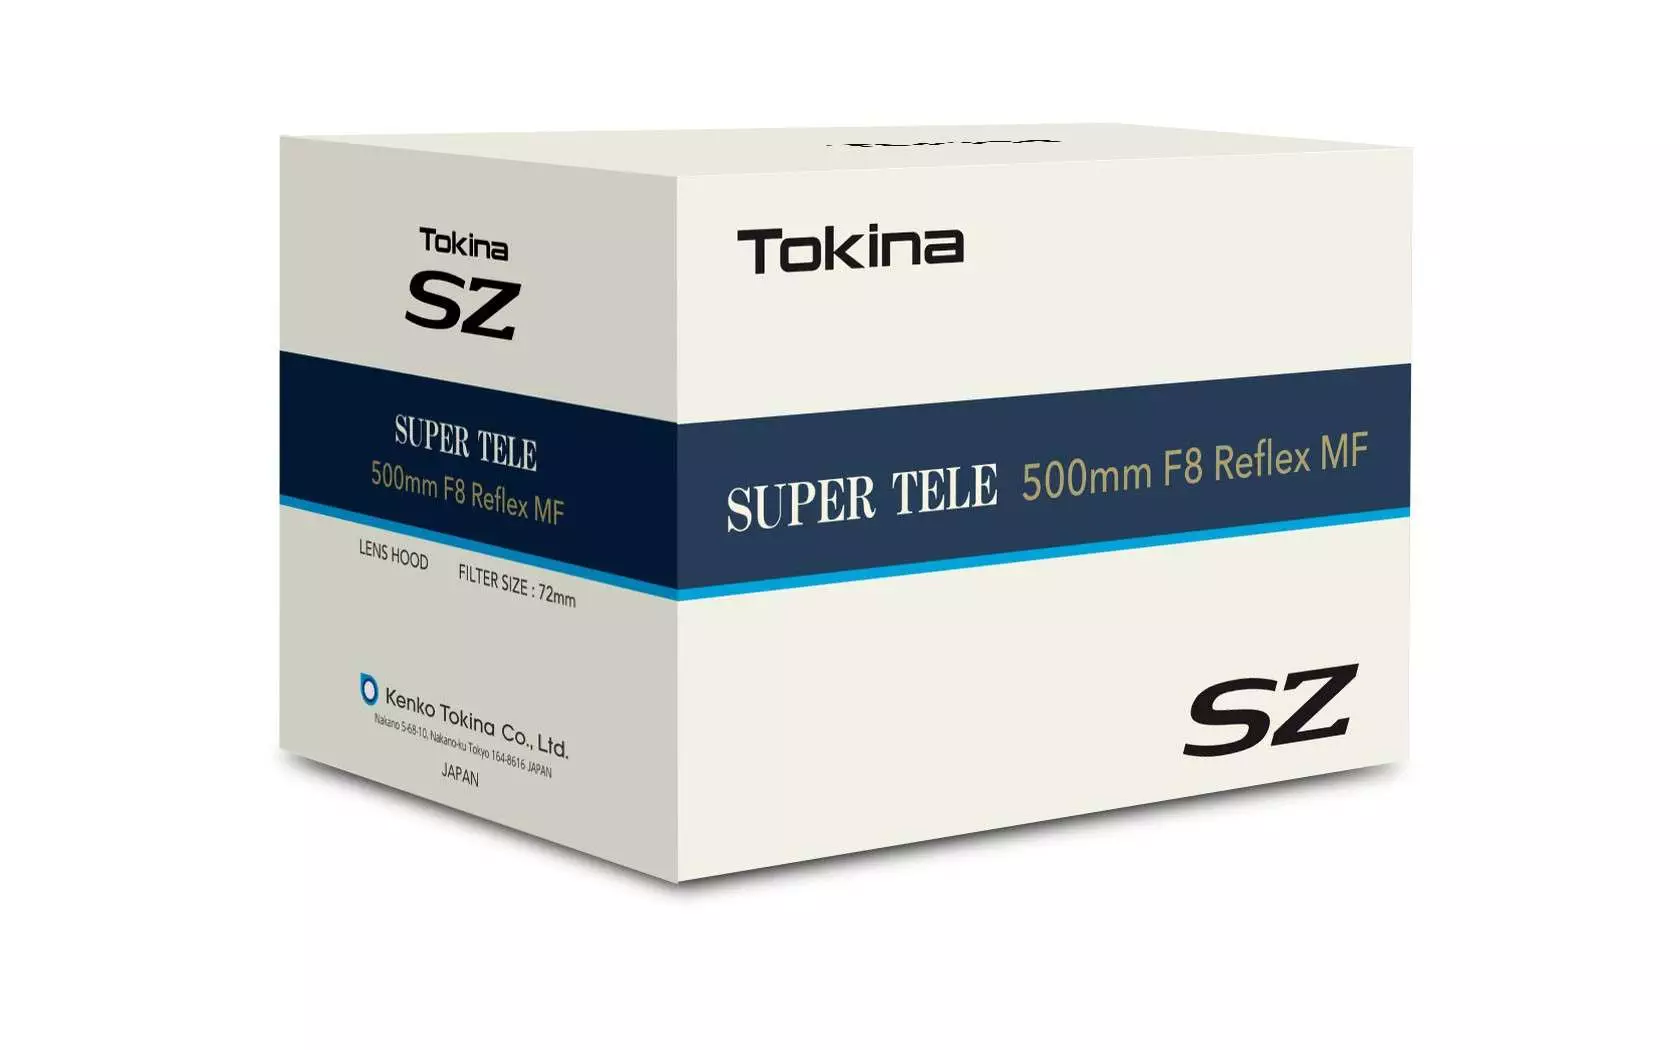 Tokina SZ Super Tele 500mm F8 Reflex MF